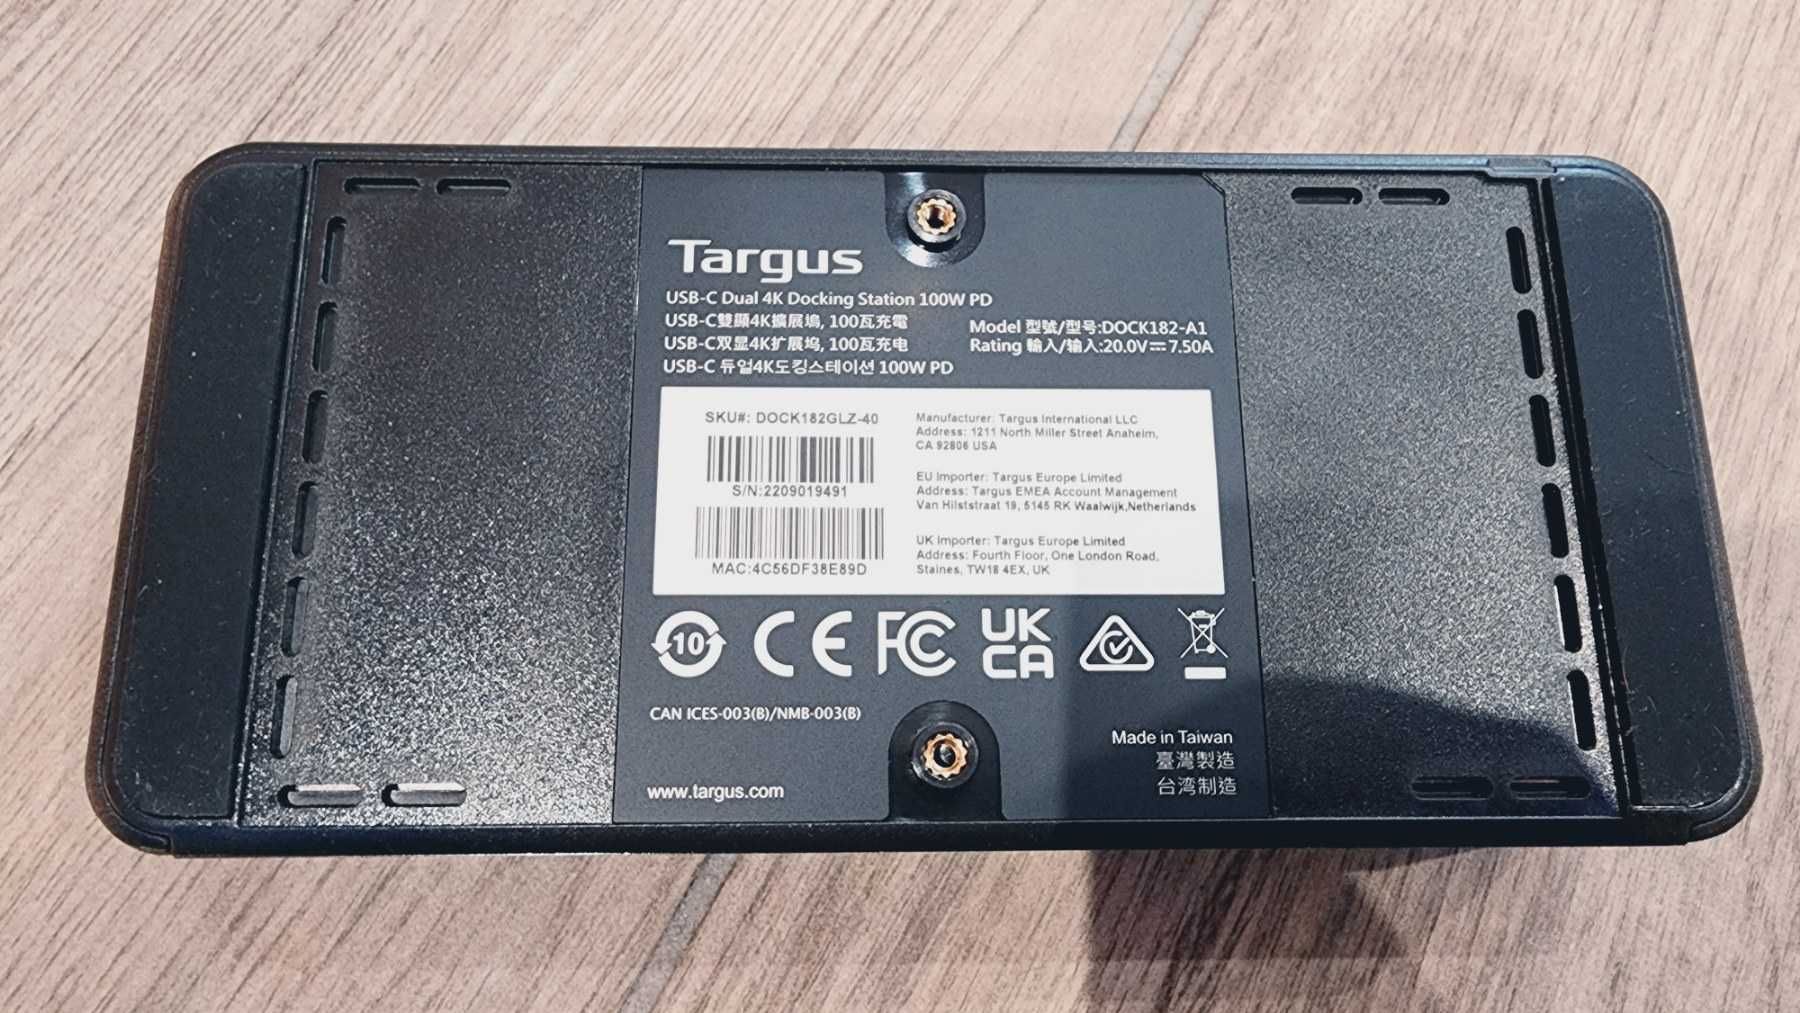 Універсальна док-станція Targus USB-C 4K Quad з зарядкою 100W PD